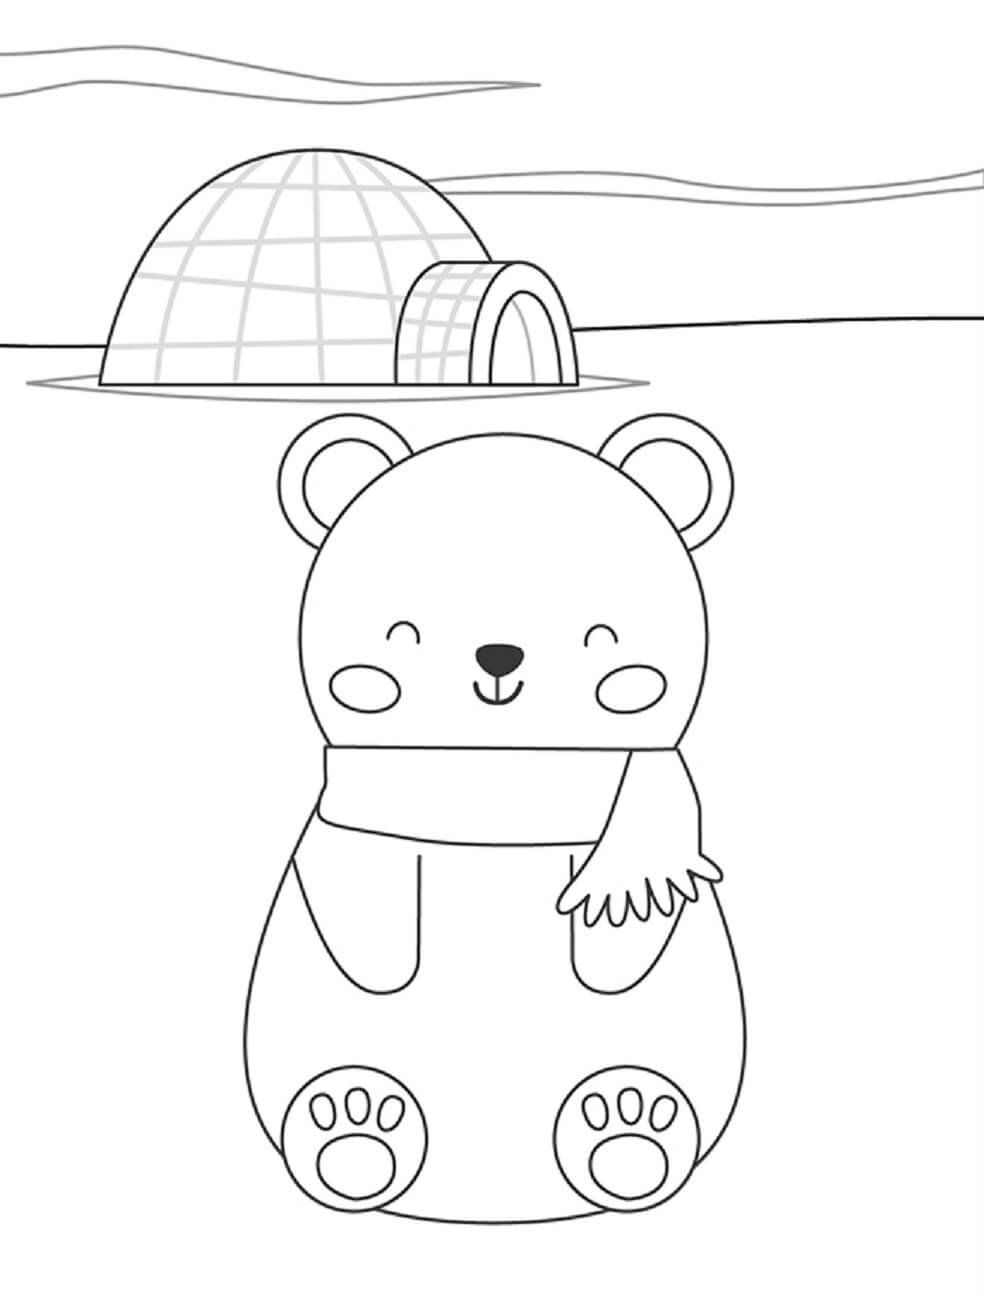 باسم, رسم كاريكتوري, الدب القطبي صورة تلوين